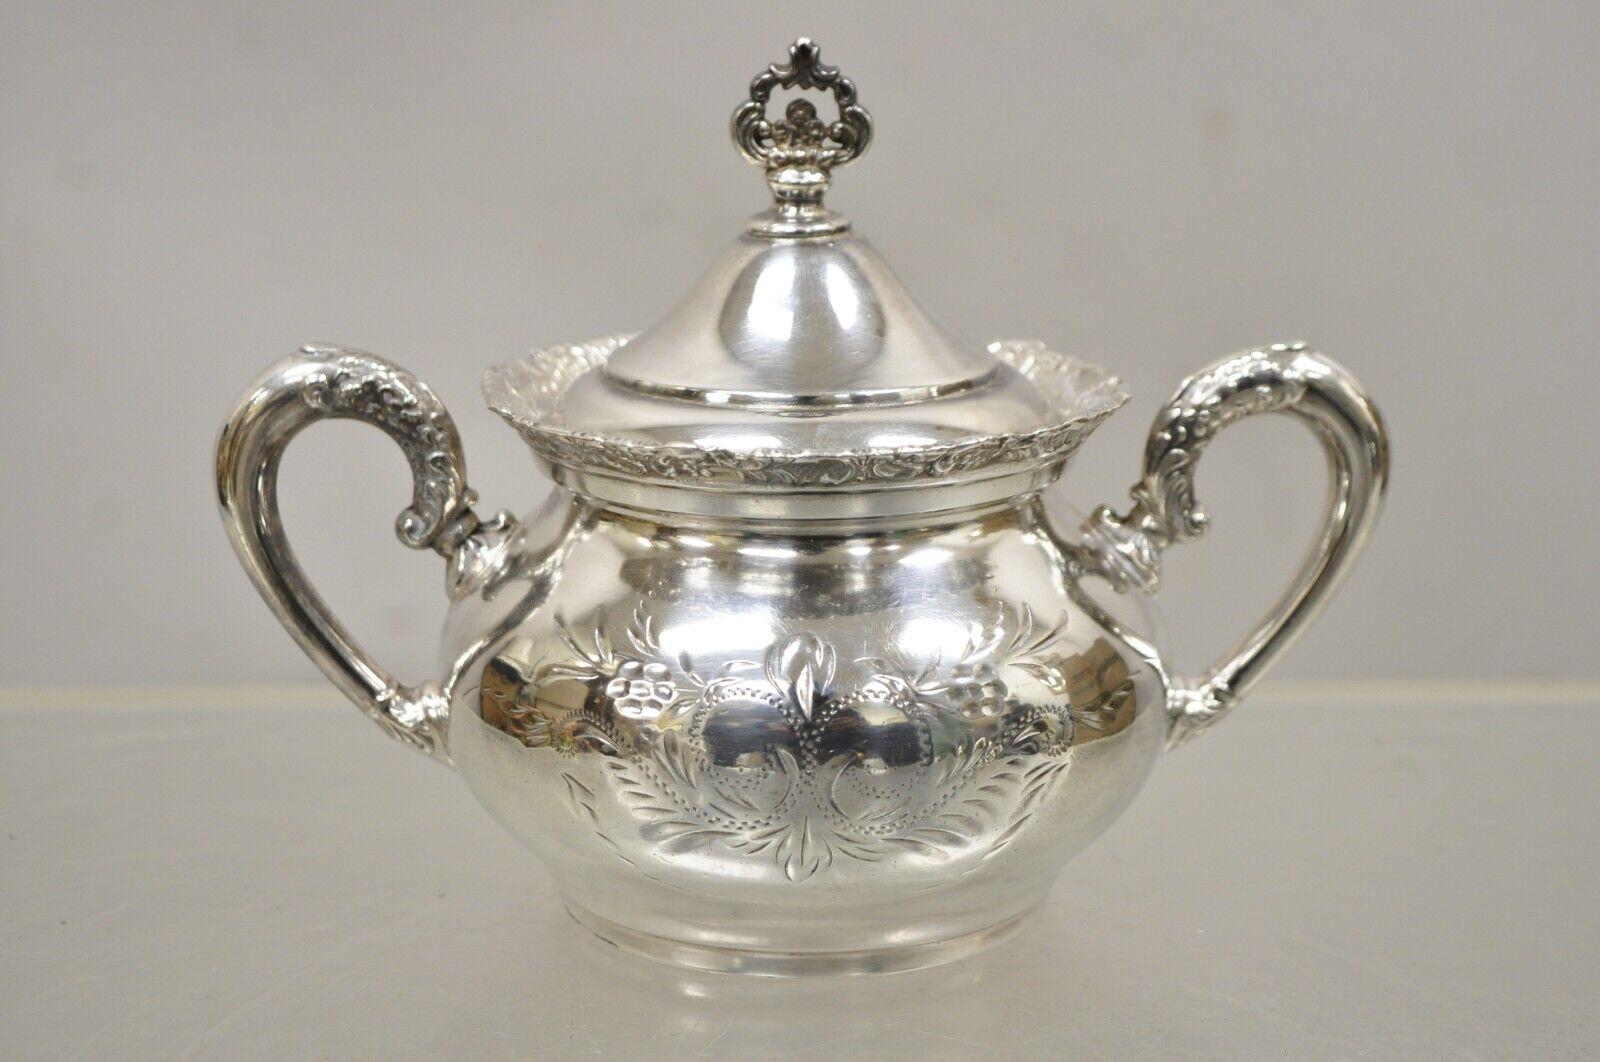 Antique Van Bergh Silver Plate Victorian Tea Serving Set - 3 Pc Set. L'article comprend (3 pièces), monogramme sur les plus petites pièces, (1) sucrier à couvercle, (1) crémier, (1) petit crémier. Circa Early 1900s. Mesures : Bol avec couvercle :